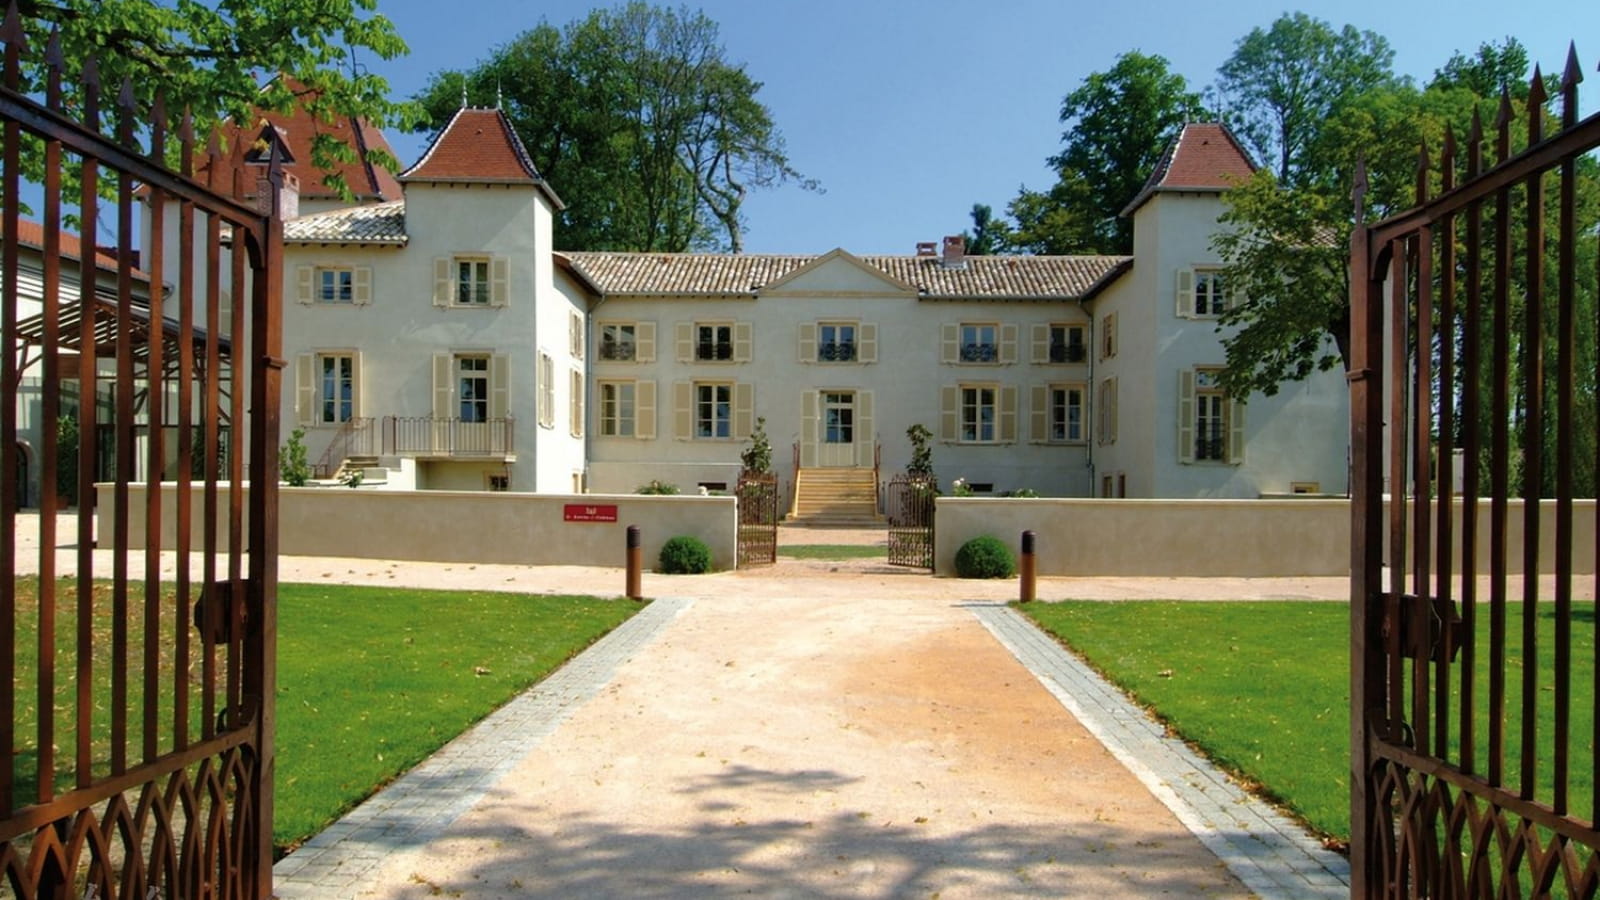 Château des Broyers